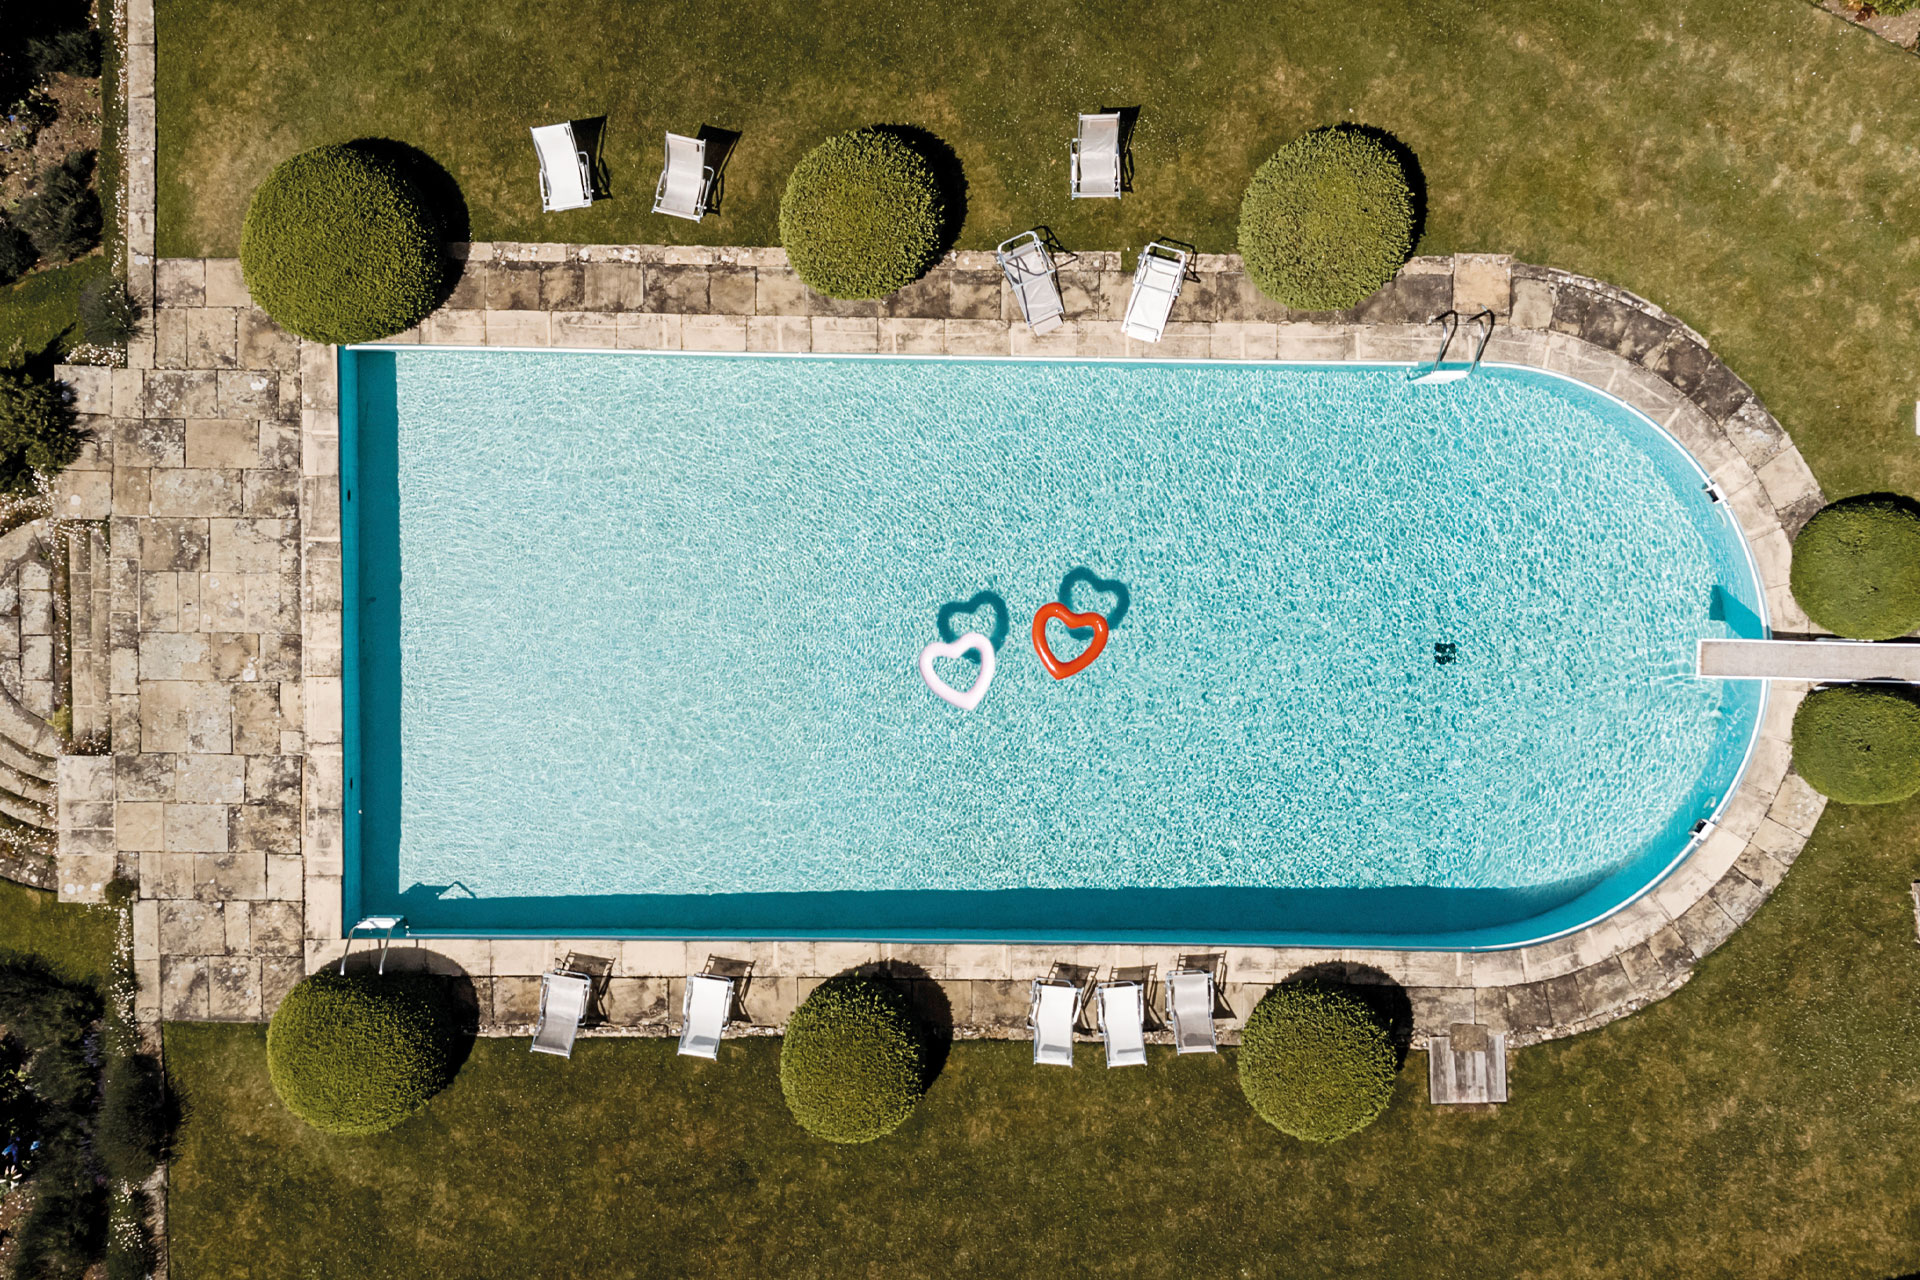 Cornwell Manor pool